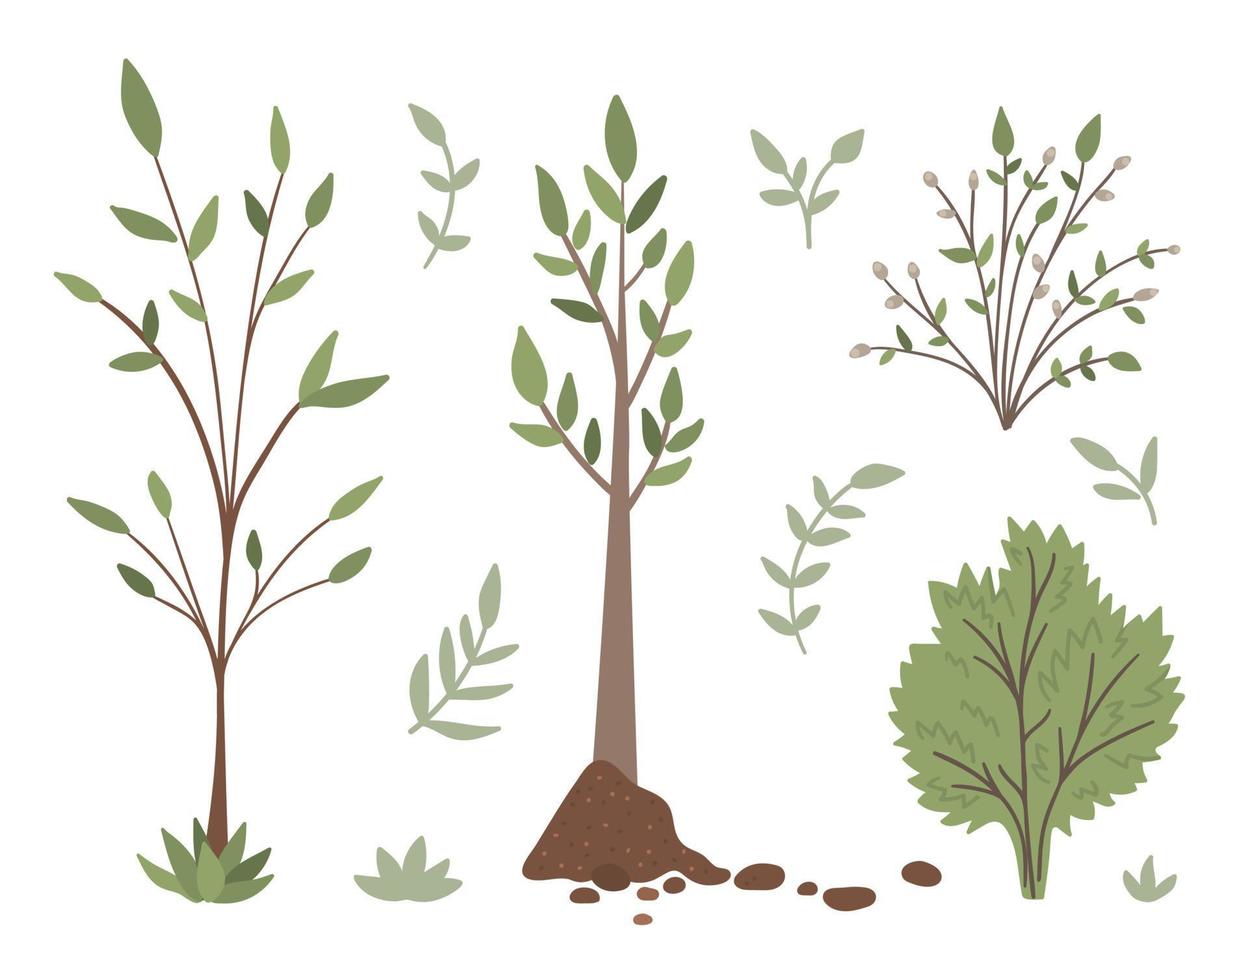 vektor uppsättning träd, växter, buskar, buskar, kvistar isolerad på vit bakgrund. platt våren trädgård illustration. trädgårdsarbete eller skog ikoner samling